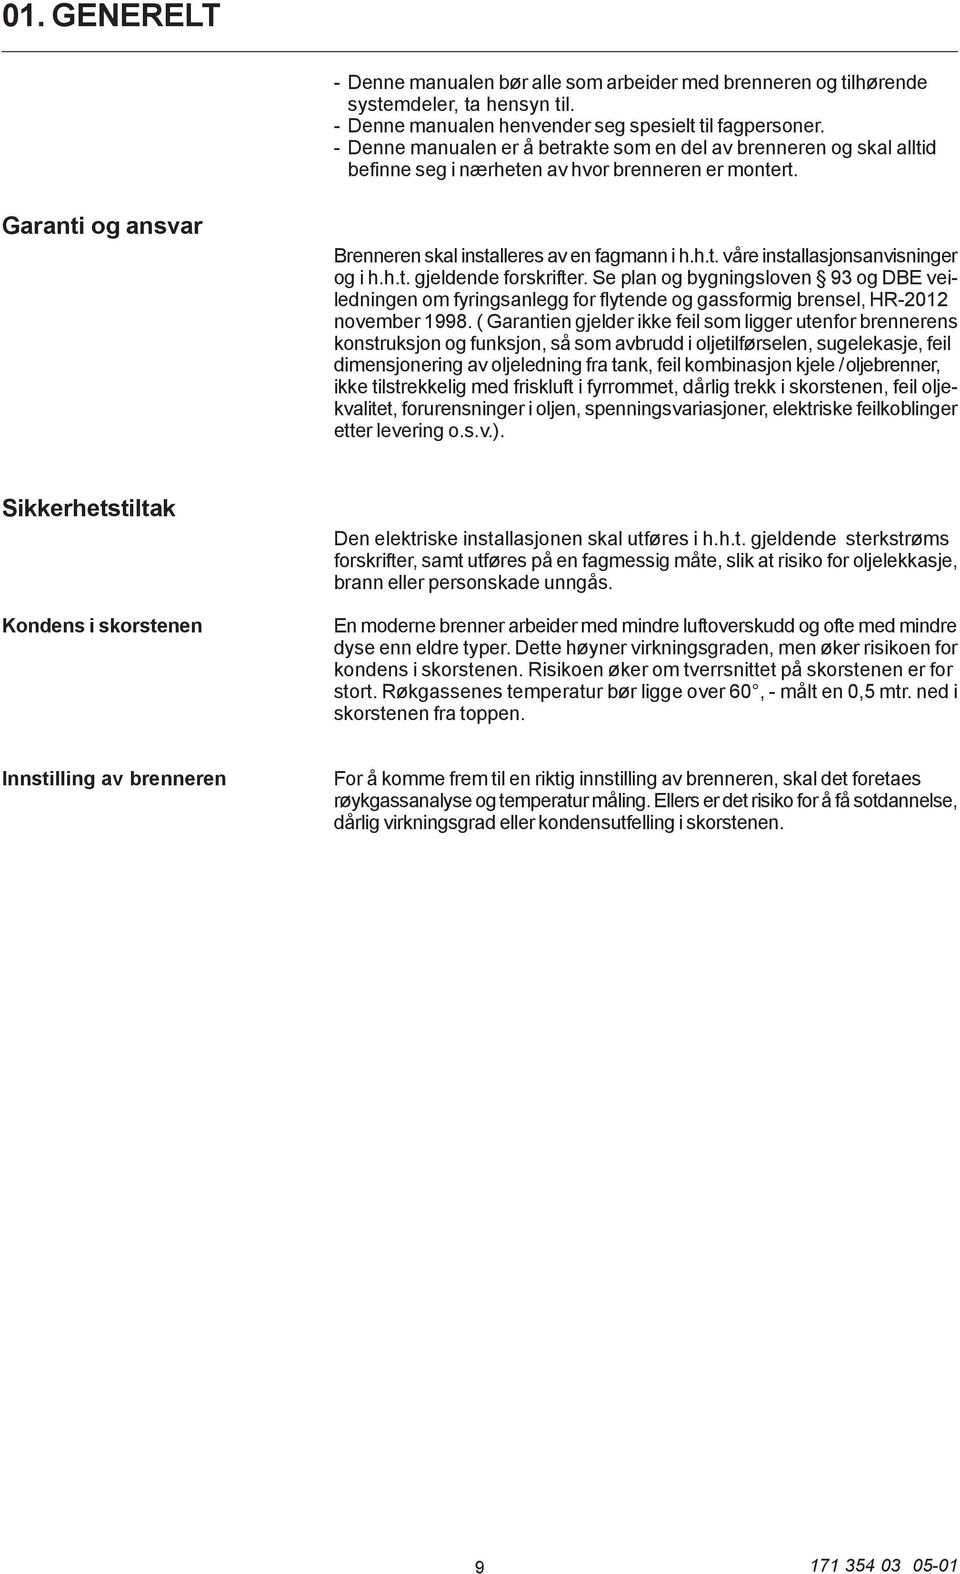 h.t. gjeldende forskrifter. Se plan og bygningsloven 93 og DBE veiledningen om fyringsanlegg for flytende og gassformig brensel, HR-2012 november 1998.